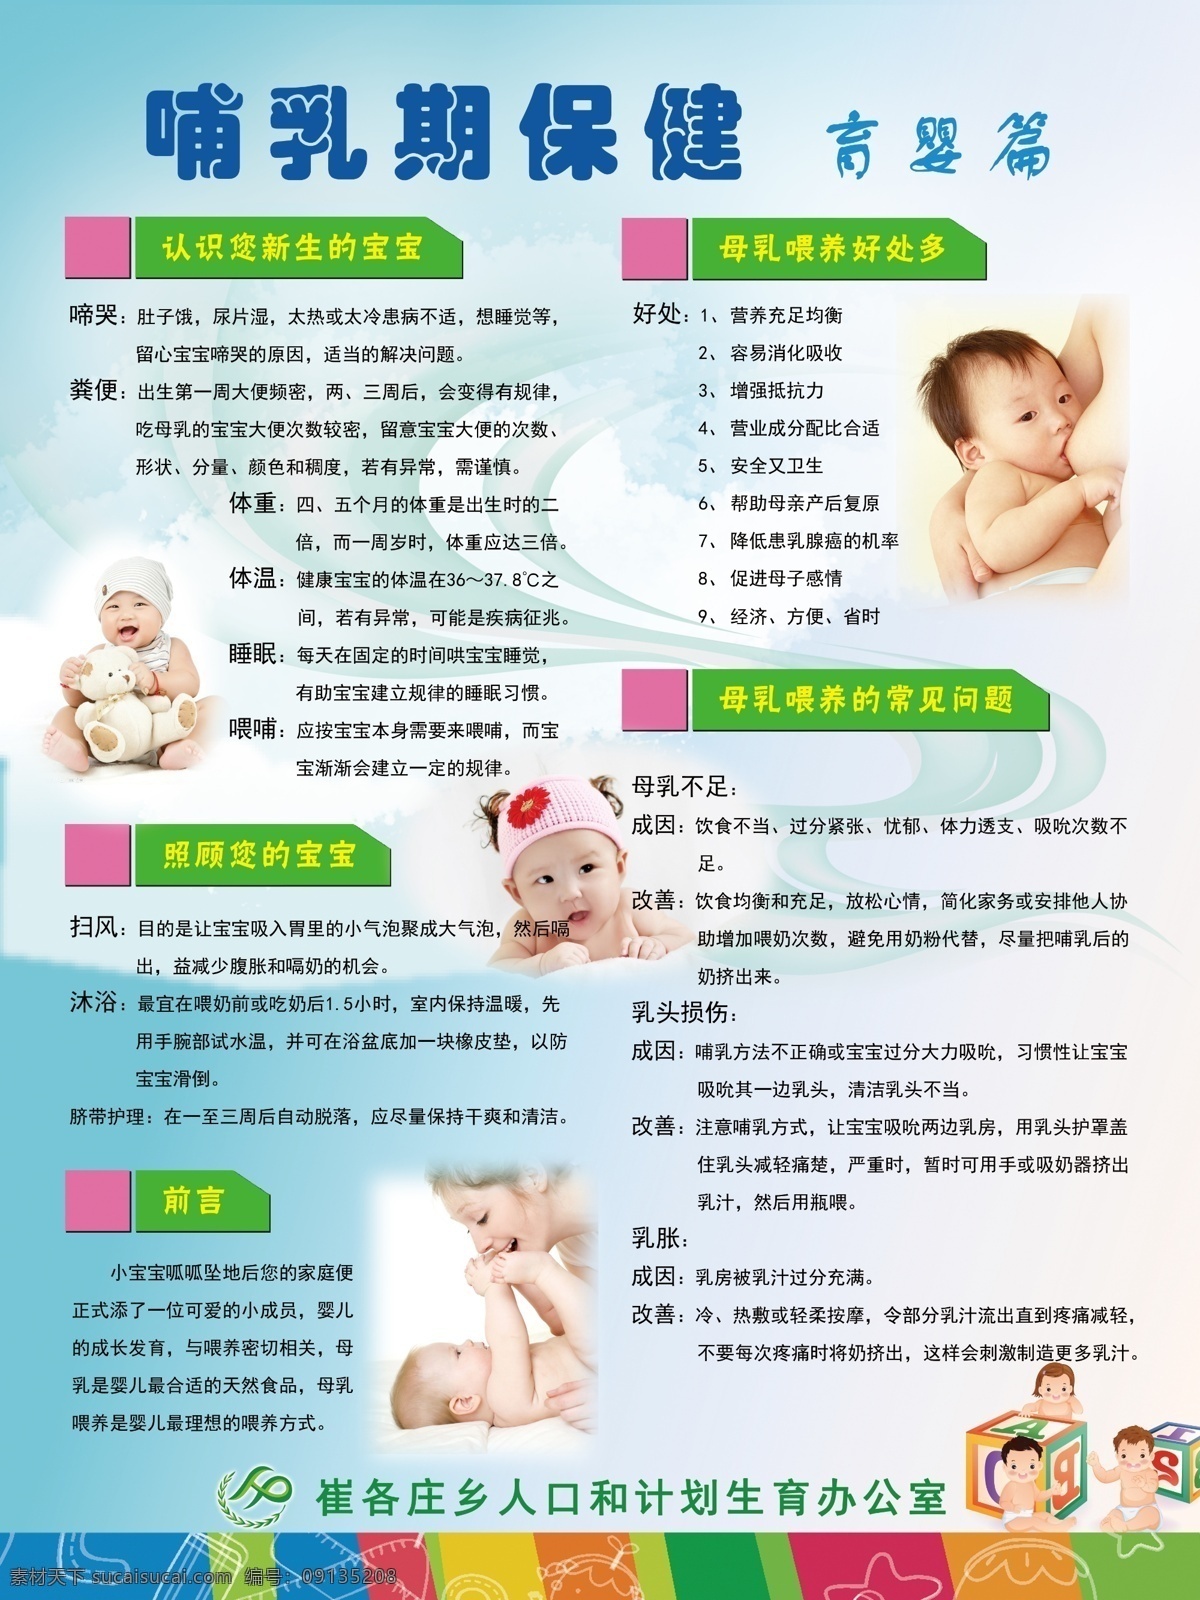 哺乳期保健 哺乳期 保健 婴儿 婴幼儿 哺乳 母婴 母乳喂养 母乳 喂养 宝宝 计划生育 医院海报